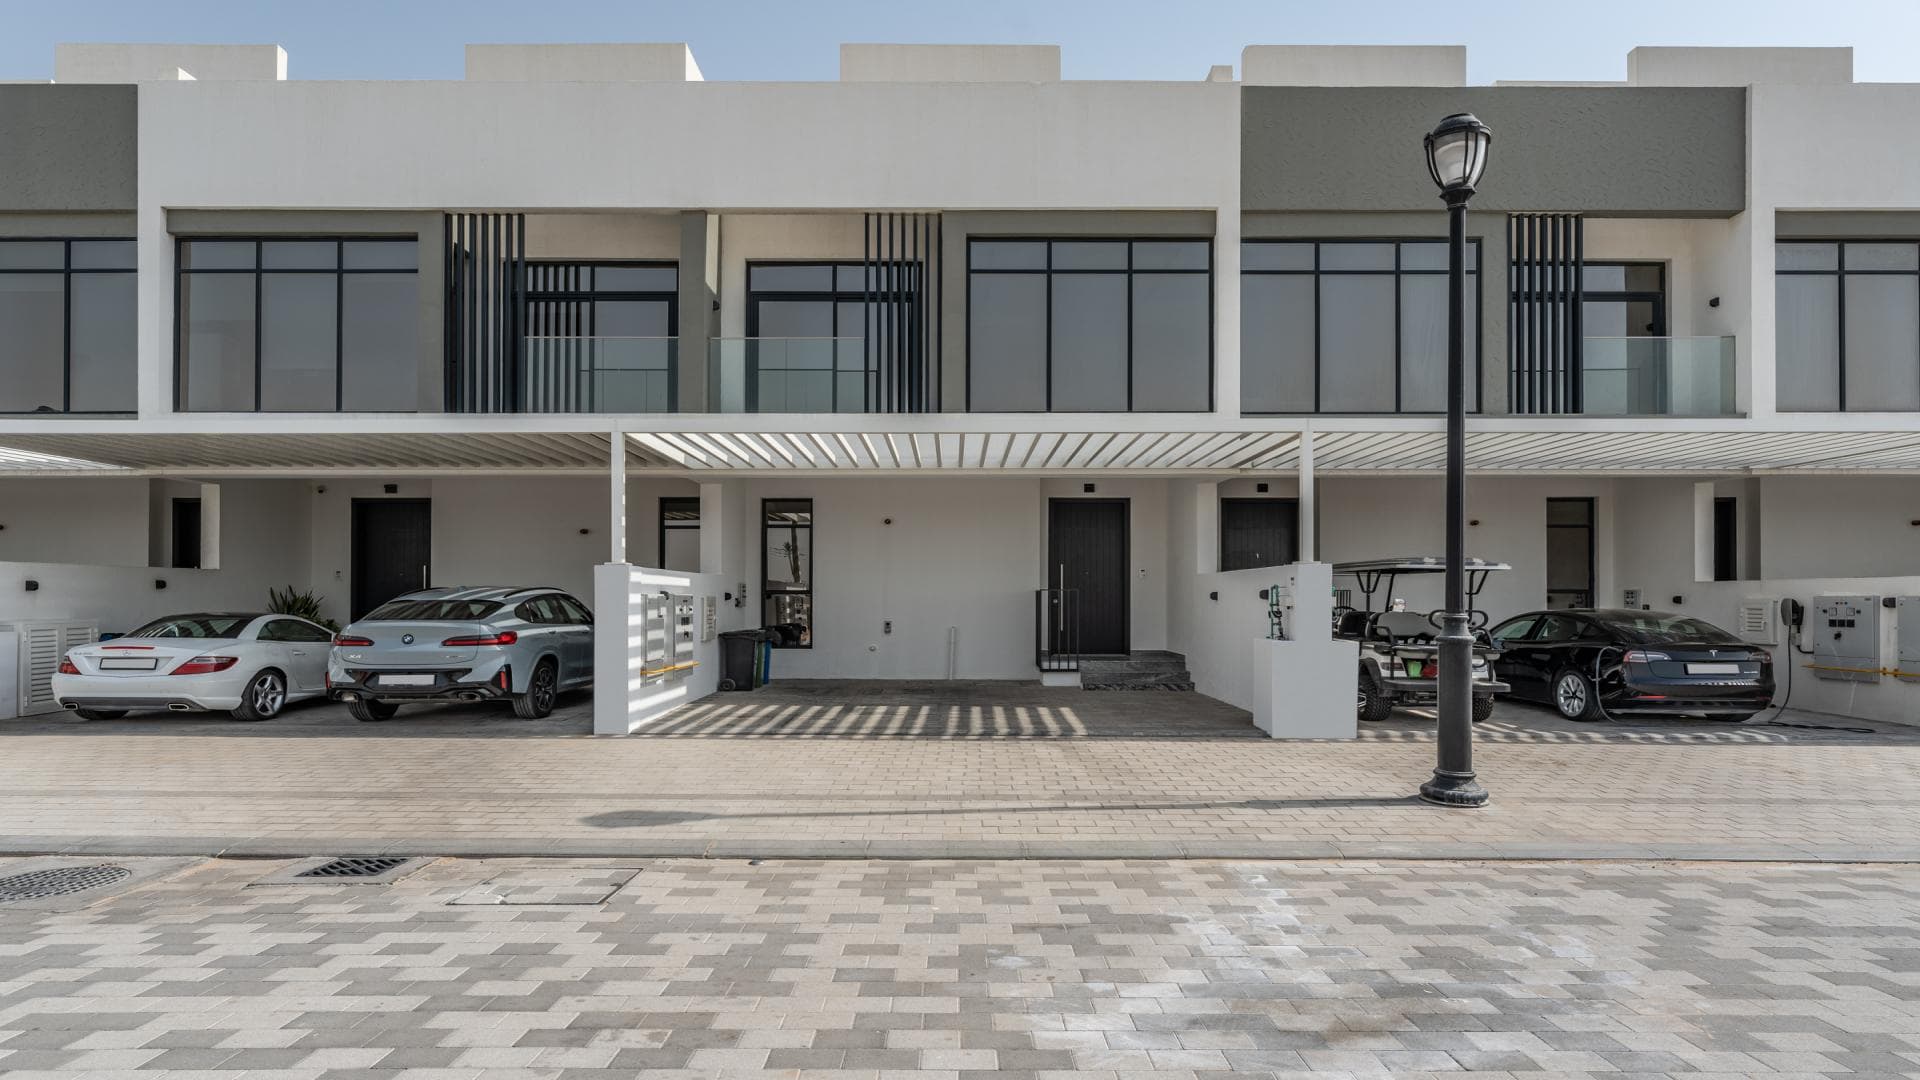 4 Bedroom Villa For Rent Jumeirah Luxury Lp21490 2a73faf9a6c29400.jpg